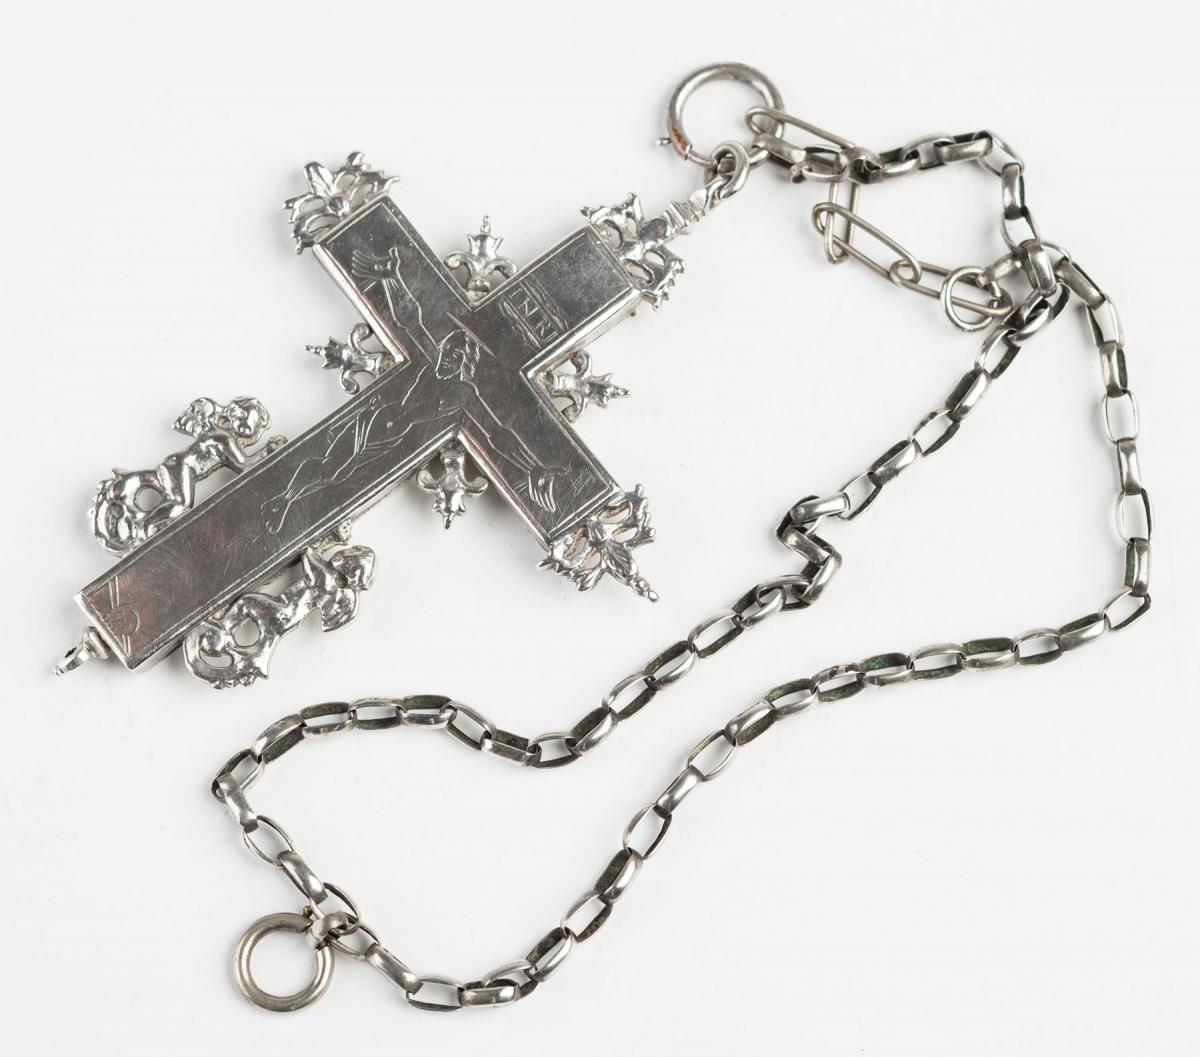 Cast silver reliquary crucifix